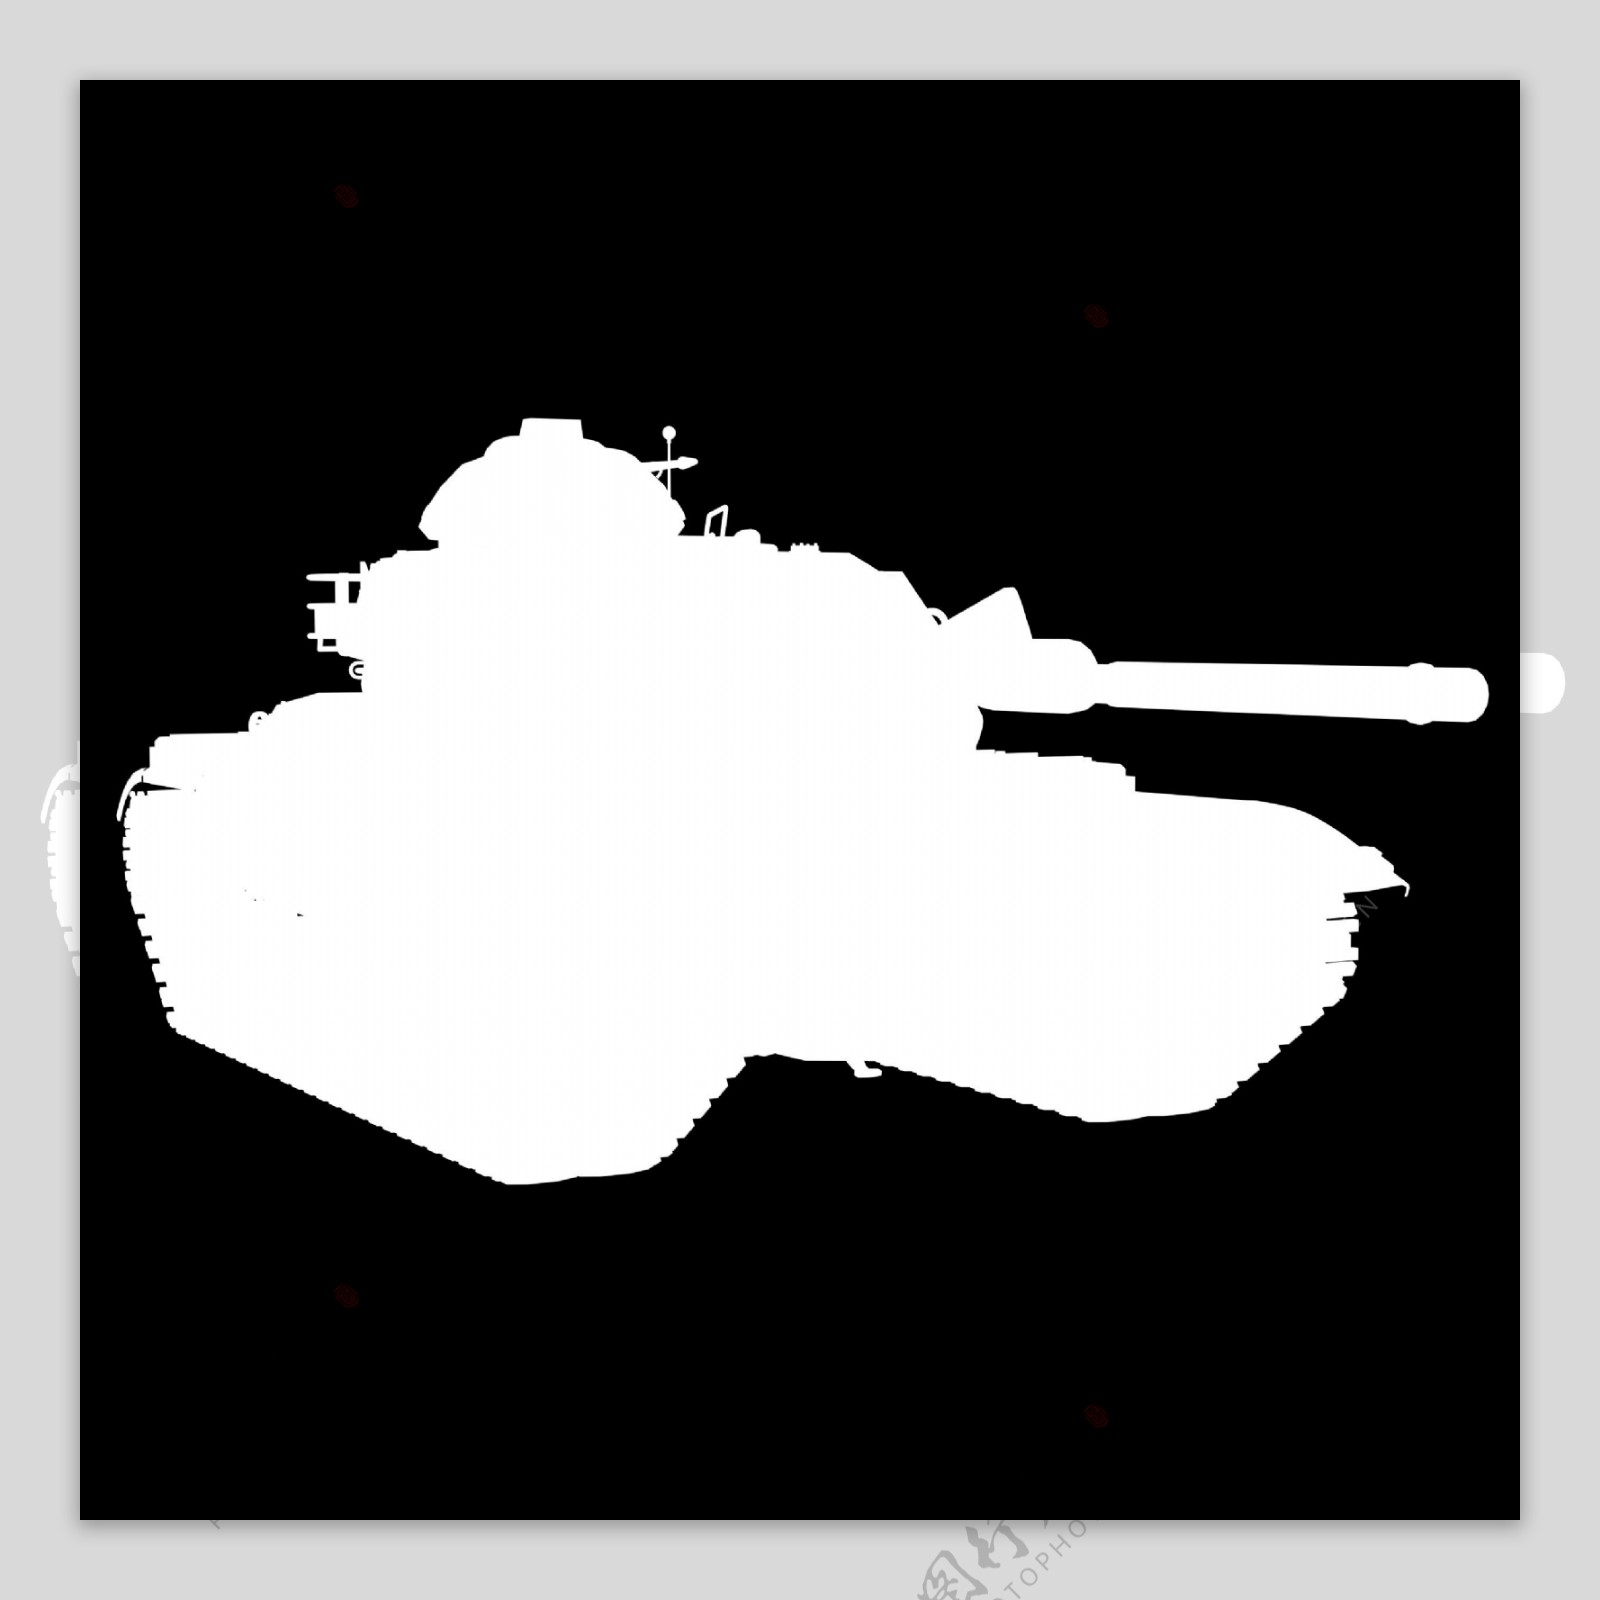 坦克兵器3D模型素材3